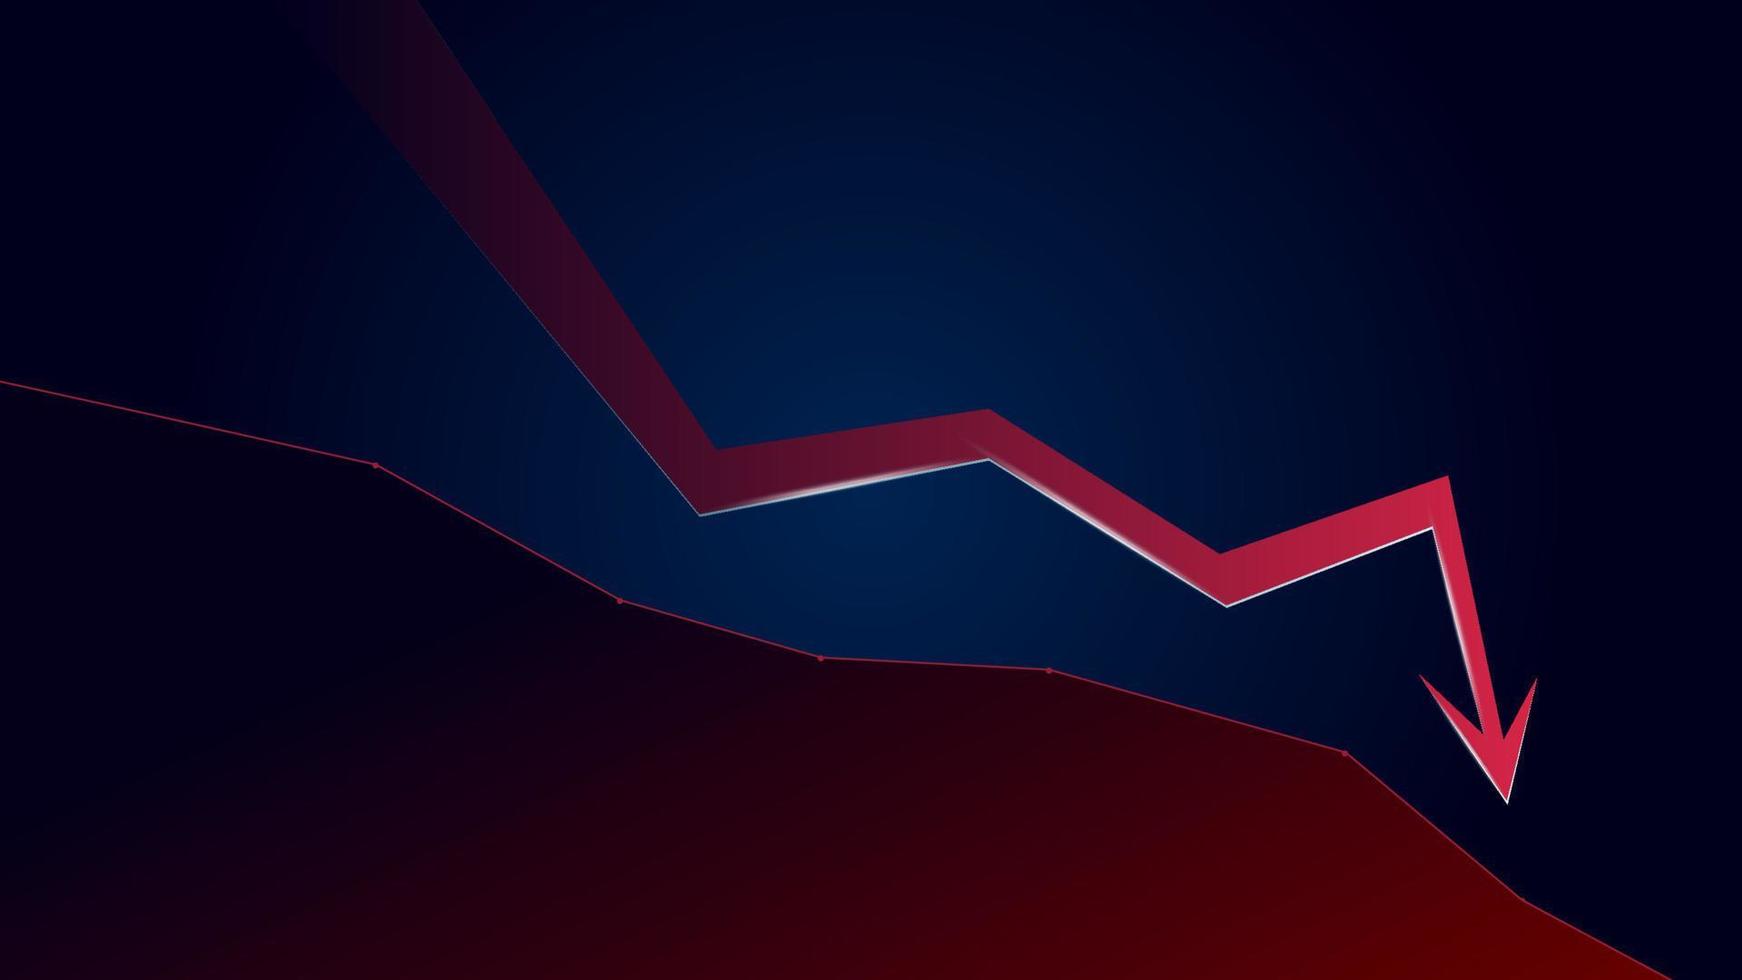 seta de tendência de baixa vermelha e preço cai com espaço de cópia em fundo azul escuro. crise comercial e crash. ilustração vetorial. vetor